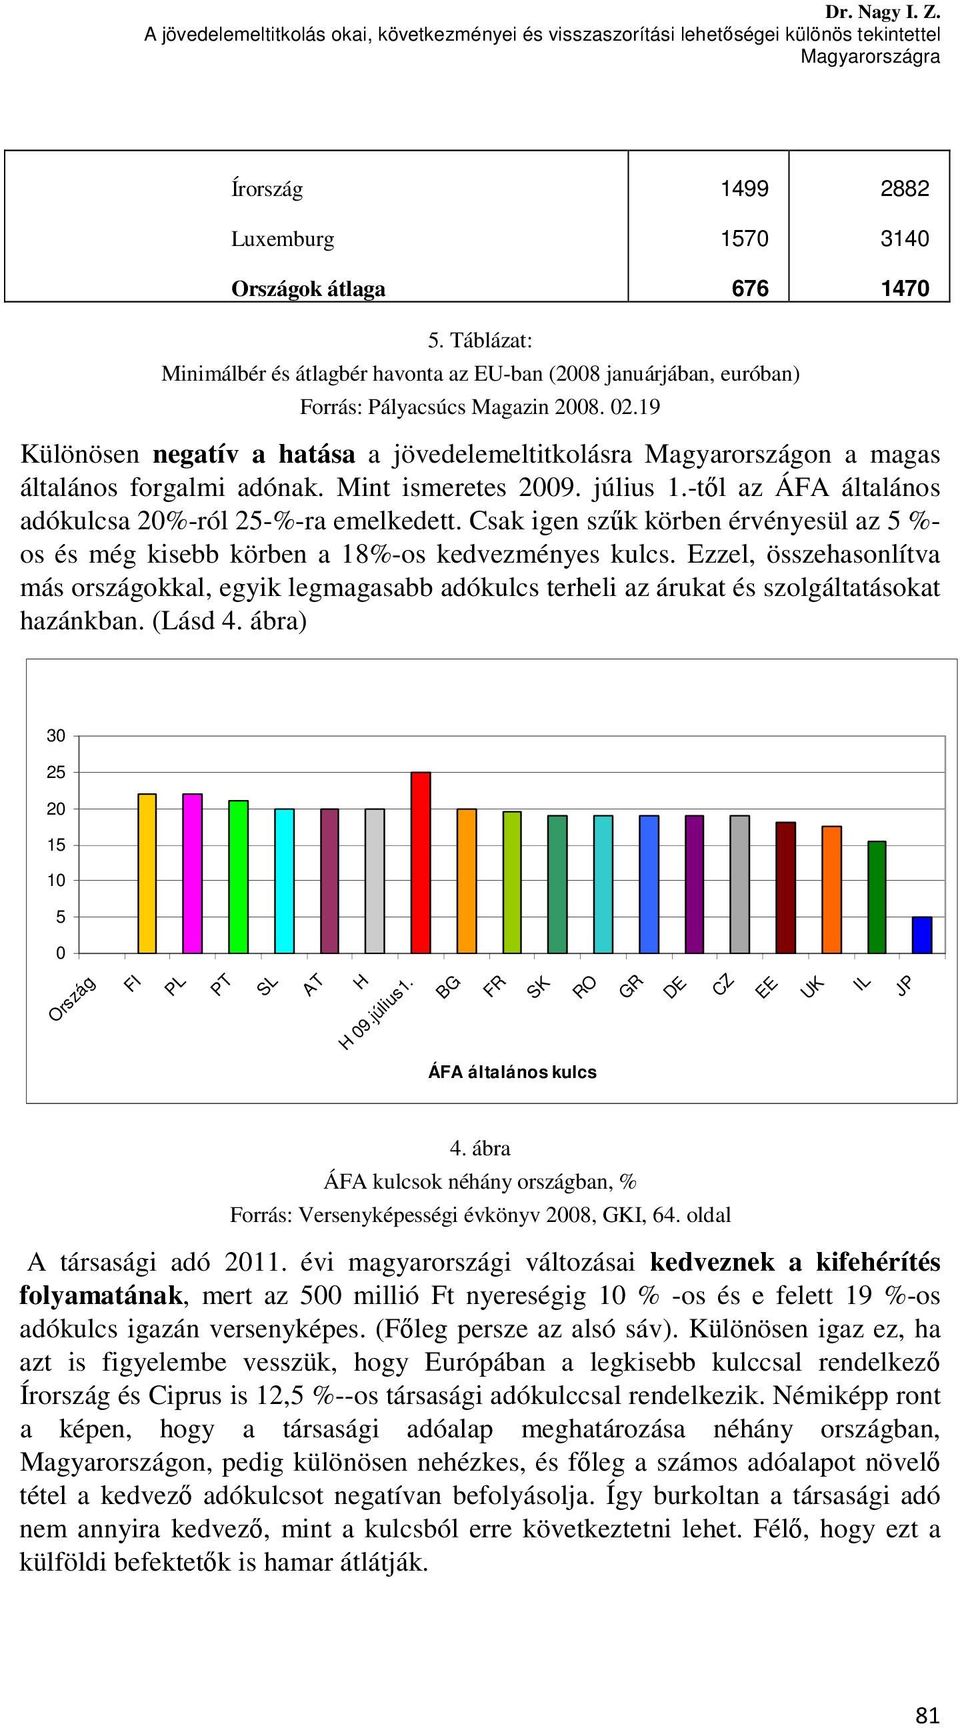 19 Különösen negatív a hatása a jövedelemeltitkolásra Magyarországon a magas általános forgalmi adónak. Mint ismeretes 2009. július 1.-től az ÁFA általános adókulcsa 20%-ról 25-%-ra emelkedett.